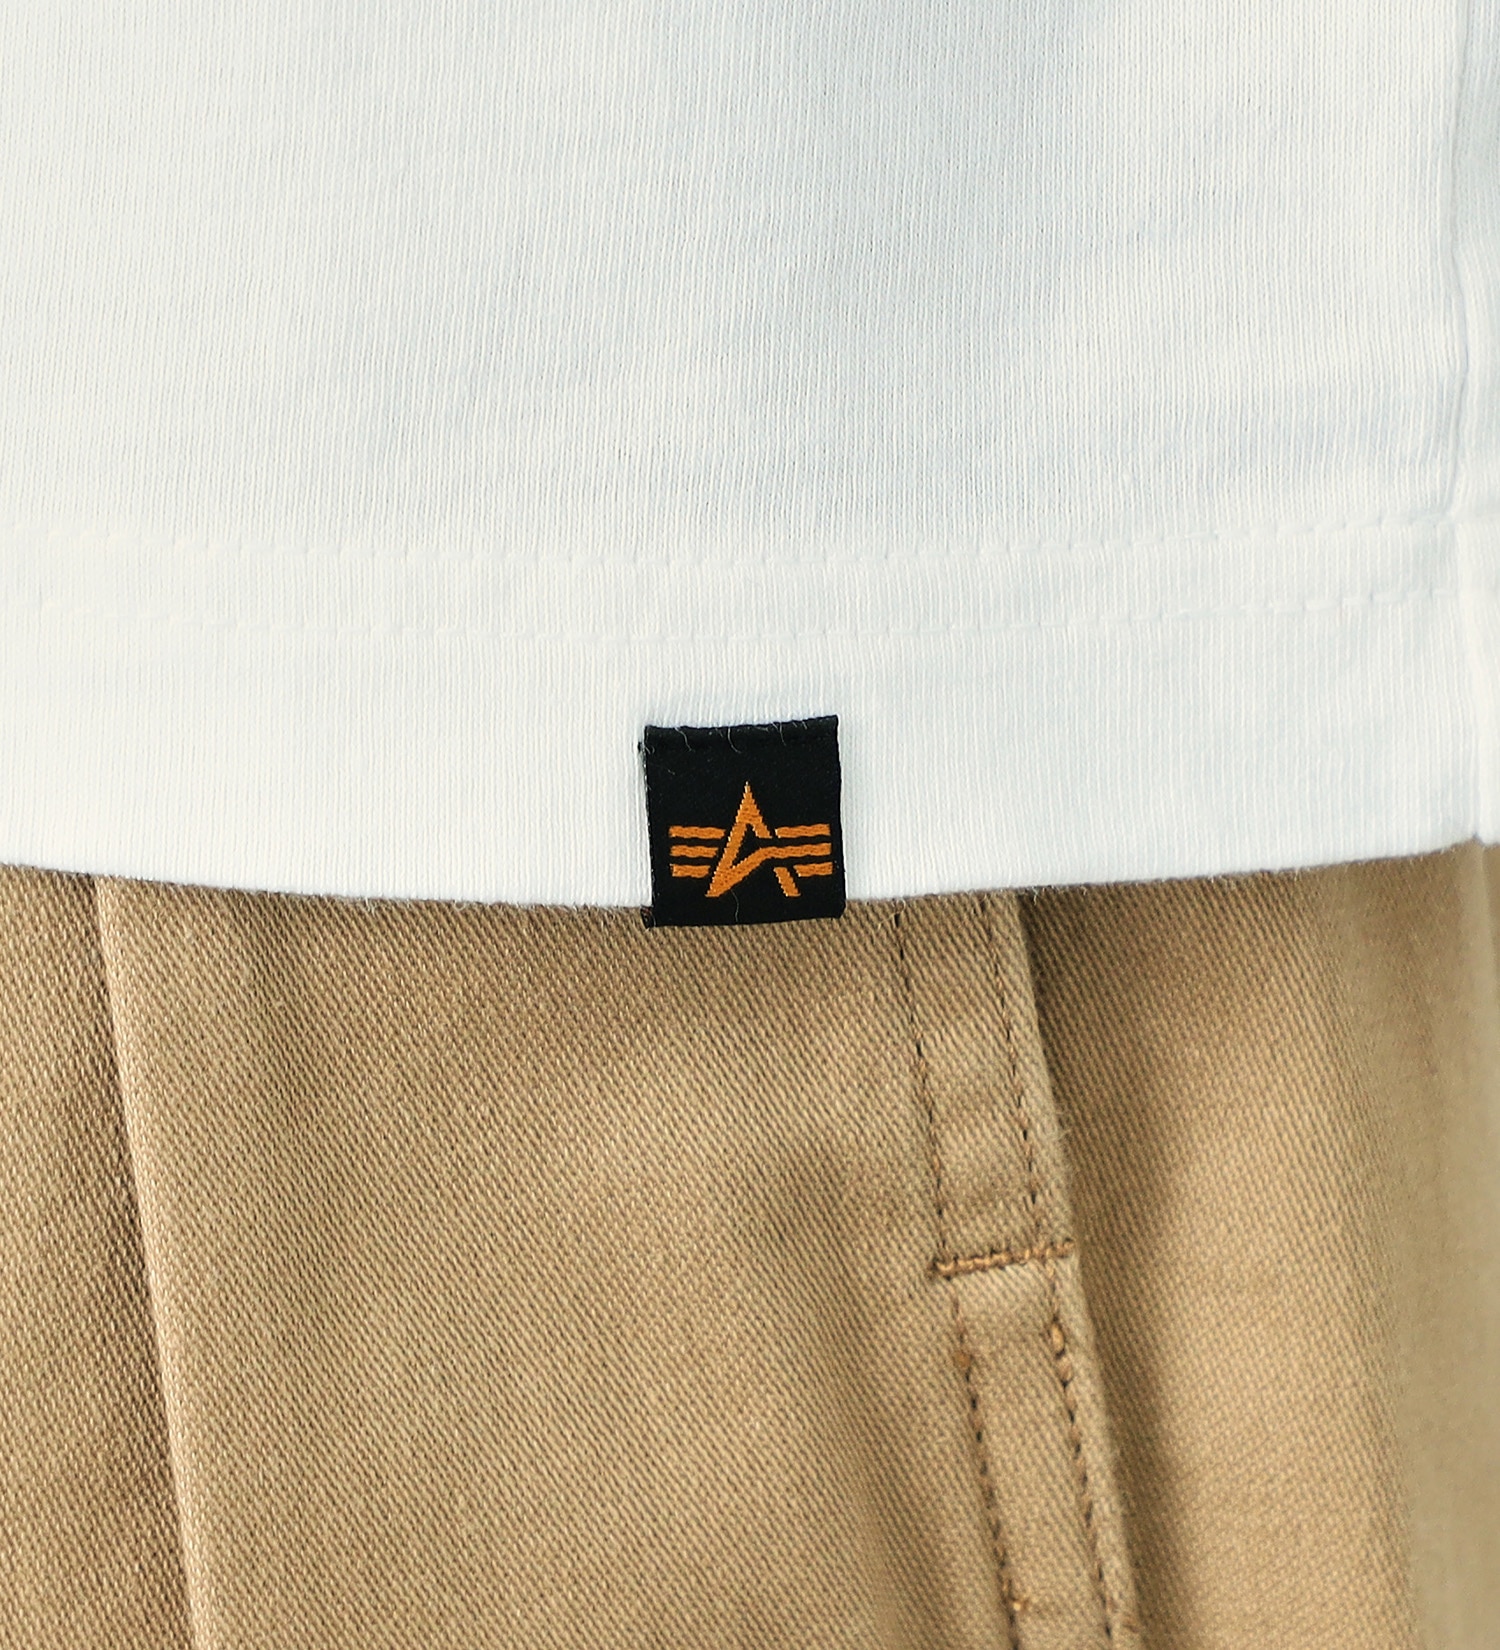 ALPHA(アルファ)のSKULL バックプリント長袖Tシャツ|トップス/Tシャツ/カットソー/メンズ|ホワイト